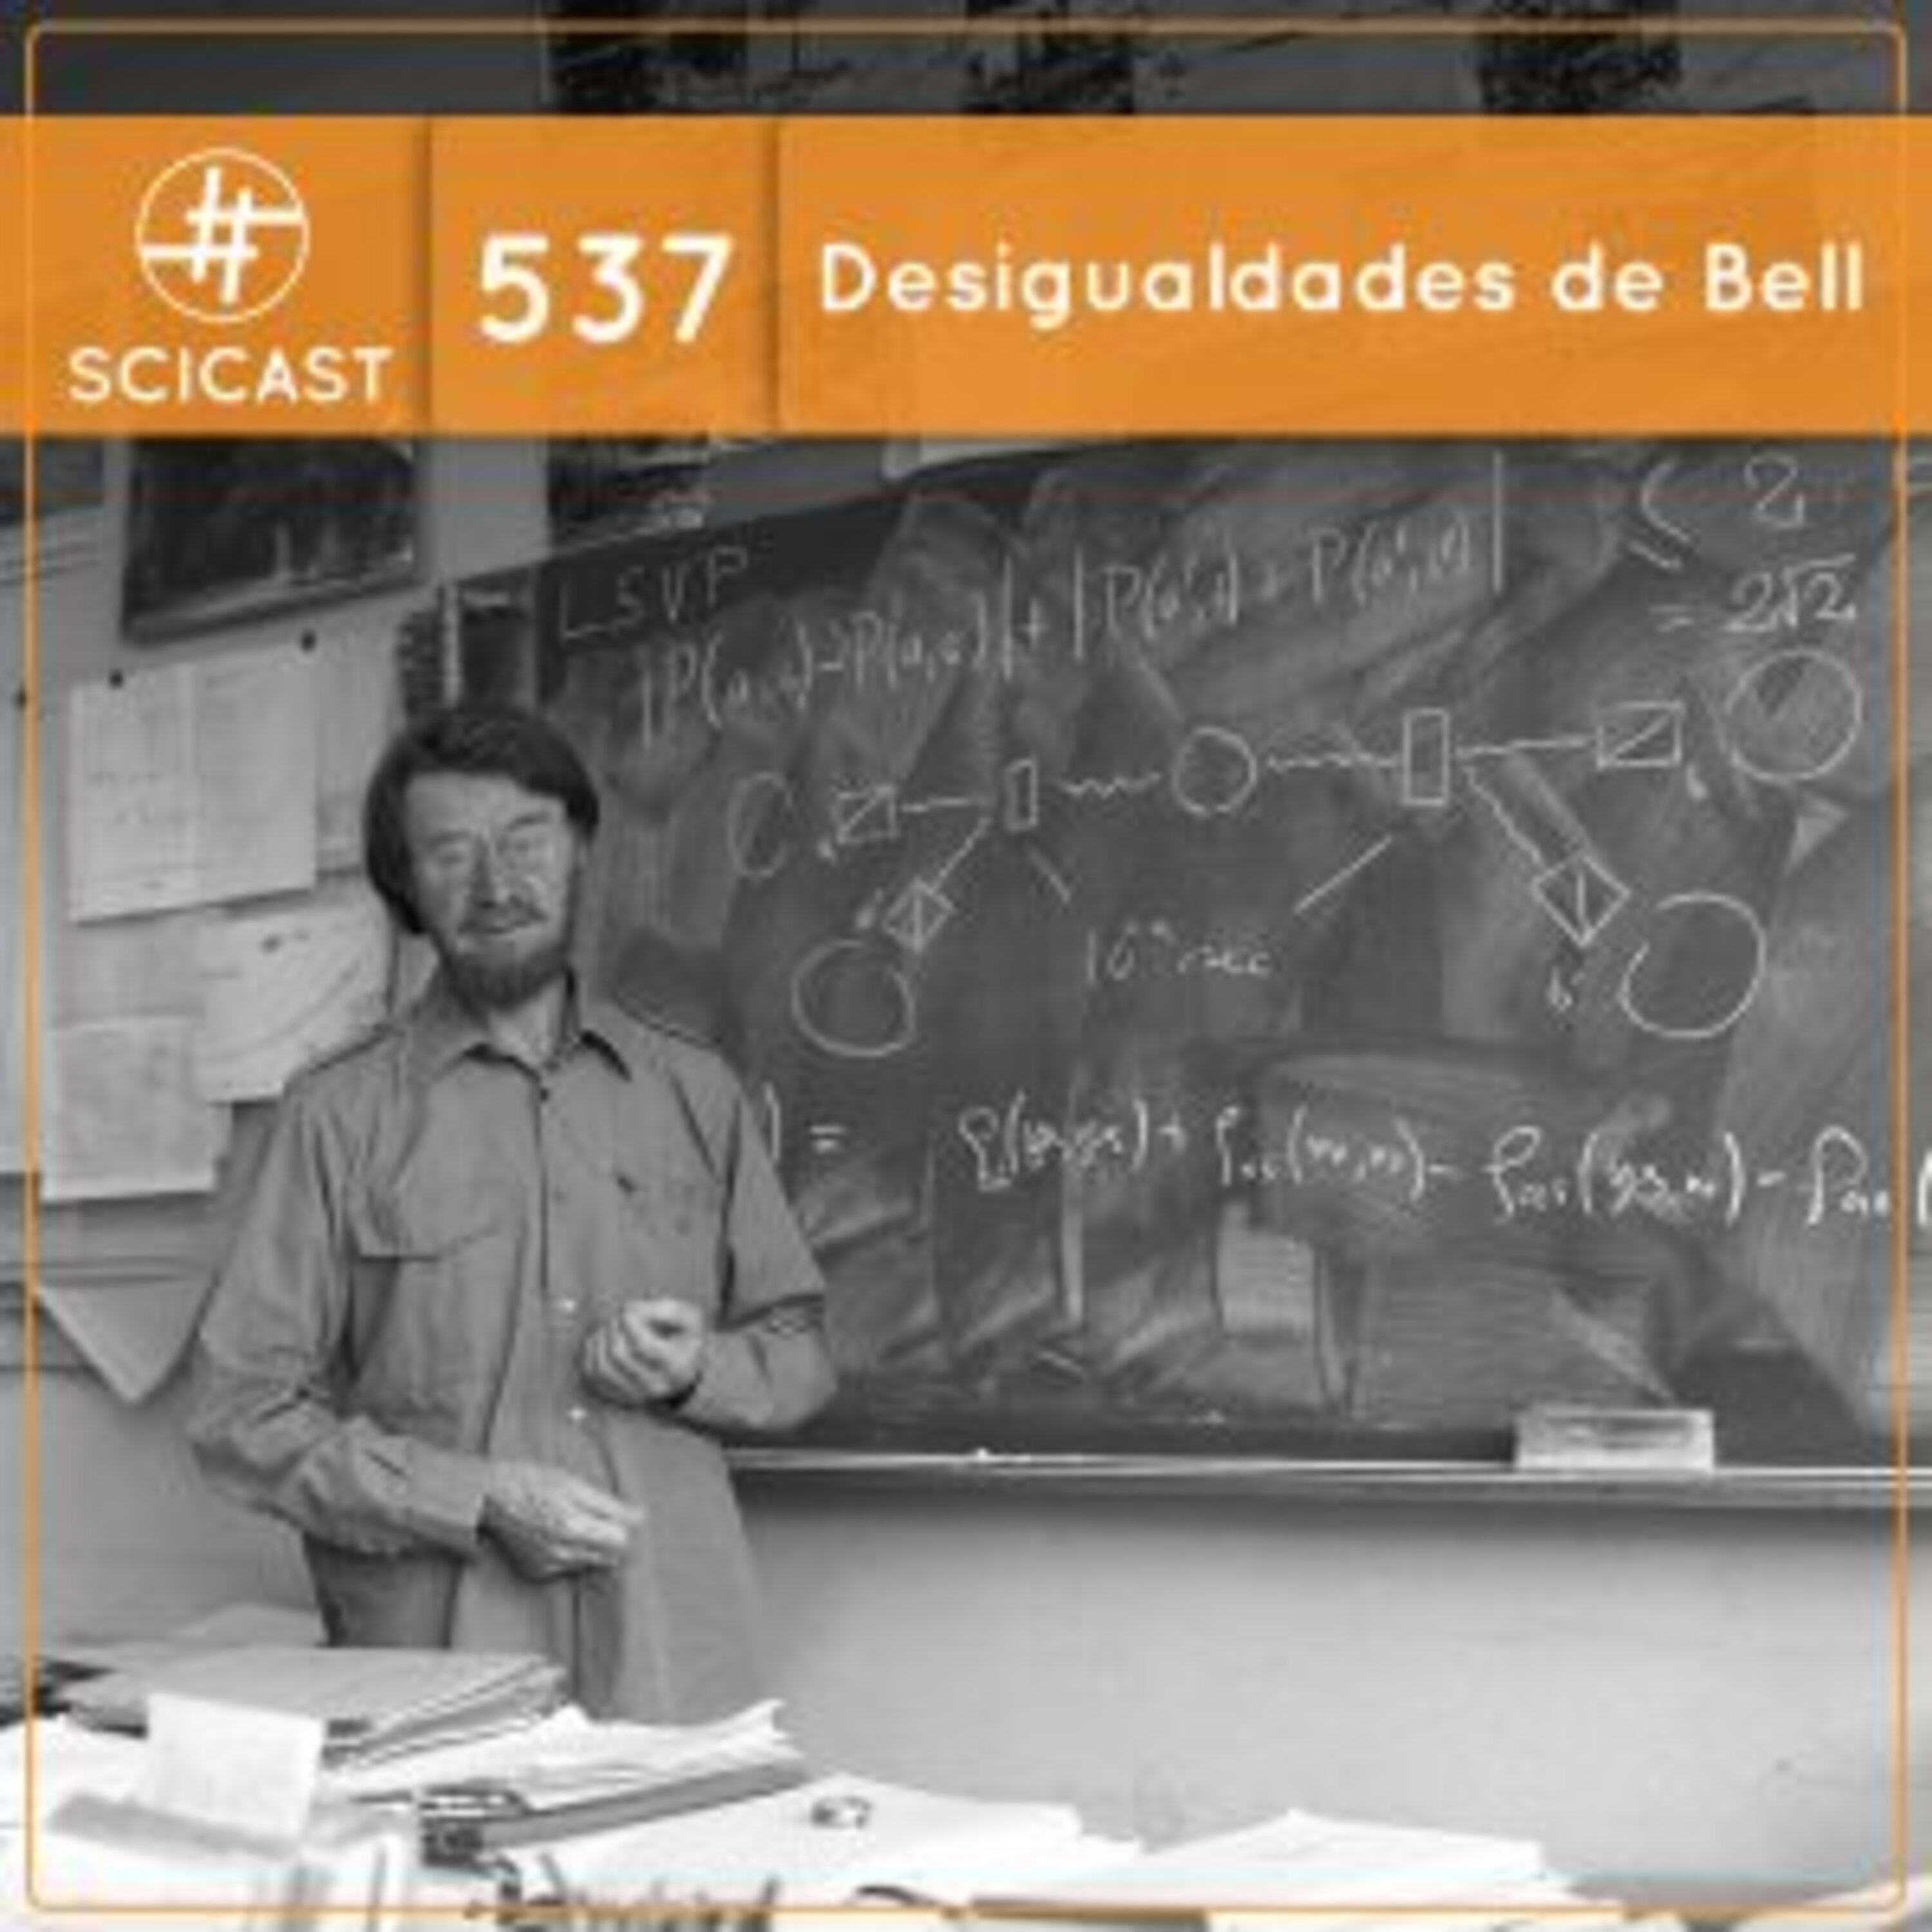 Desigualdades de Bell (SciCast #537)